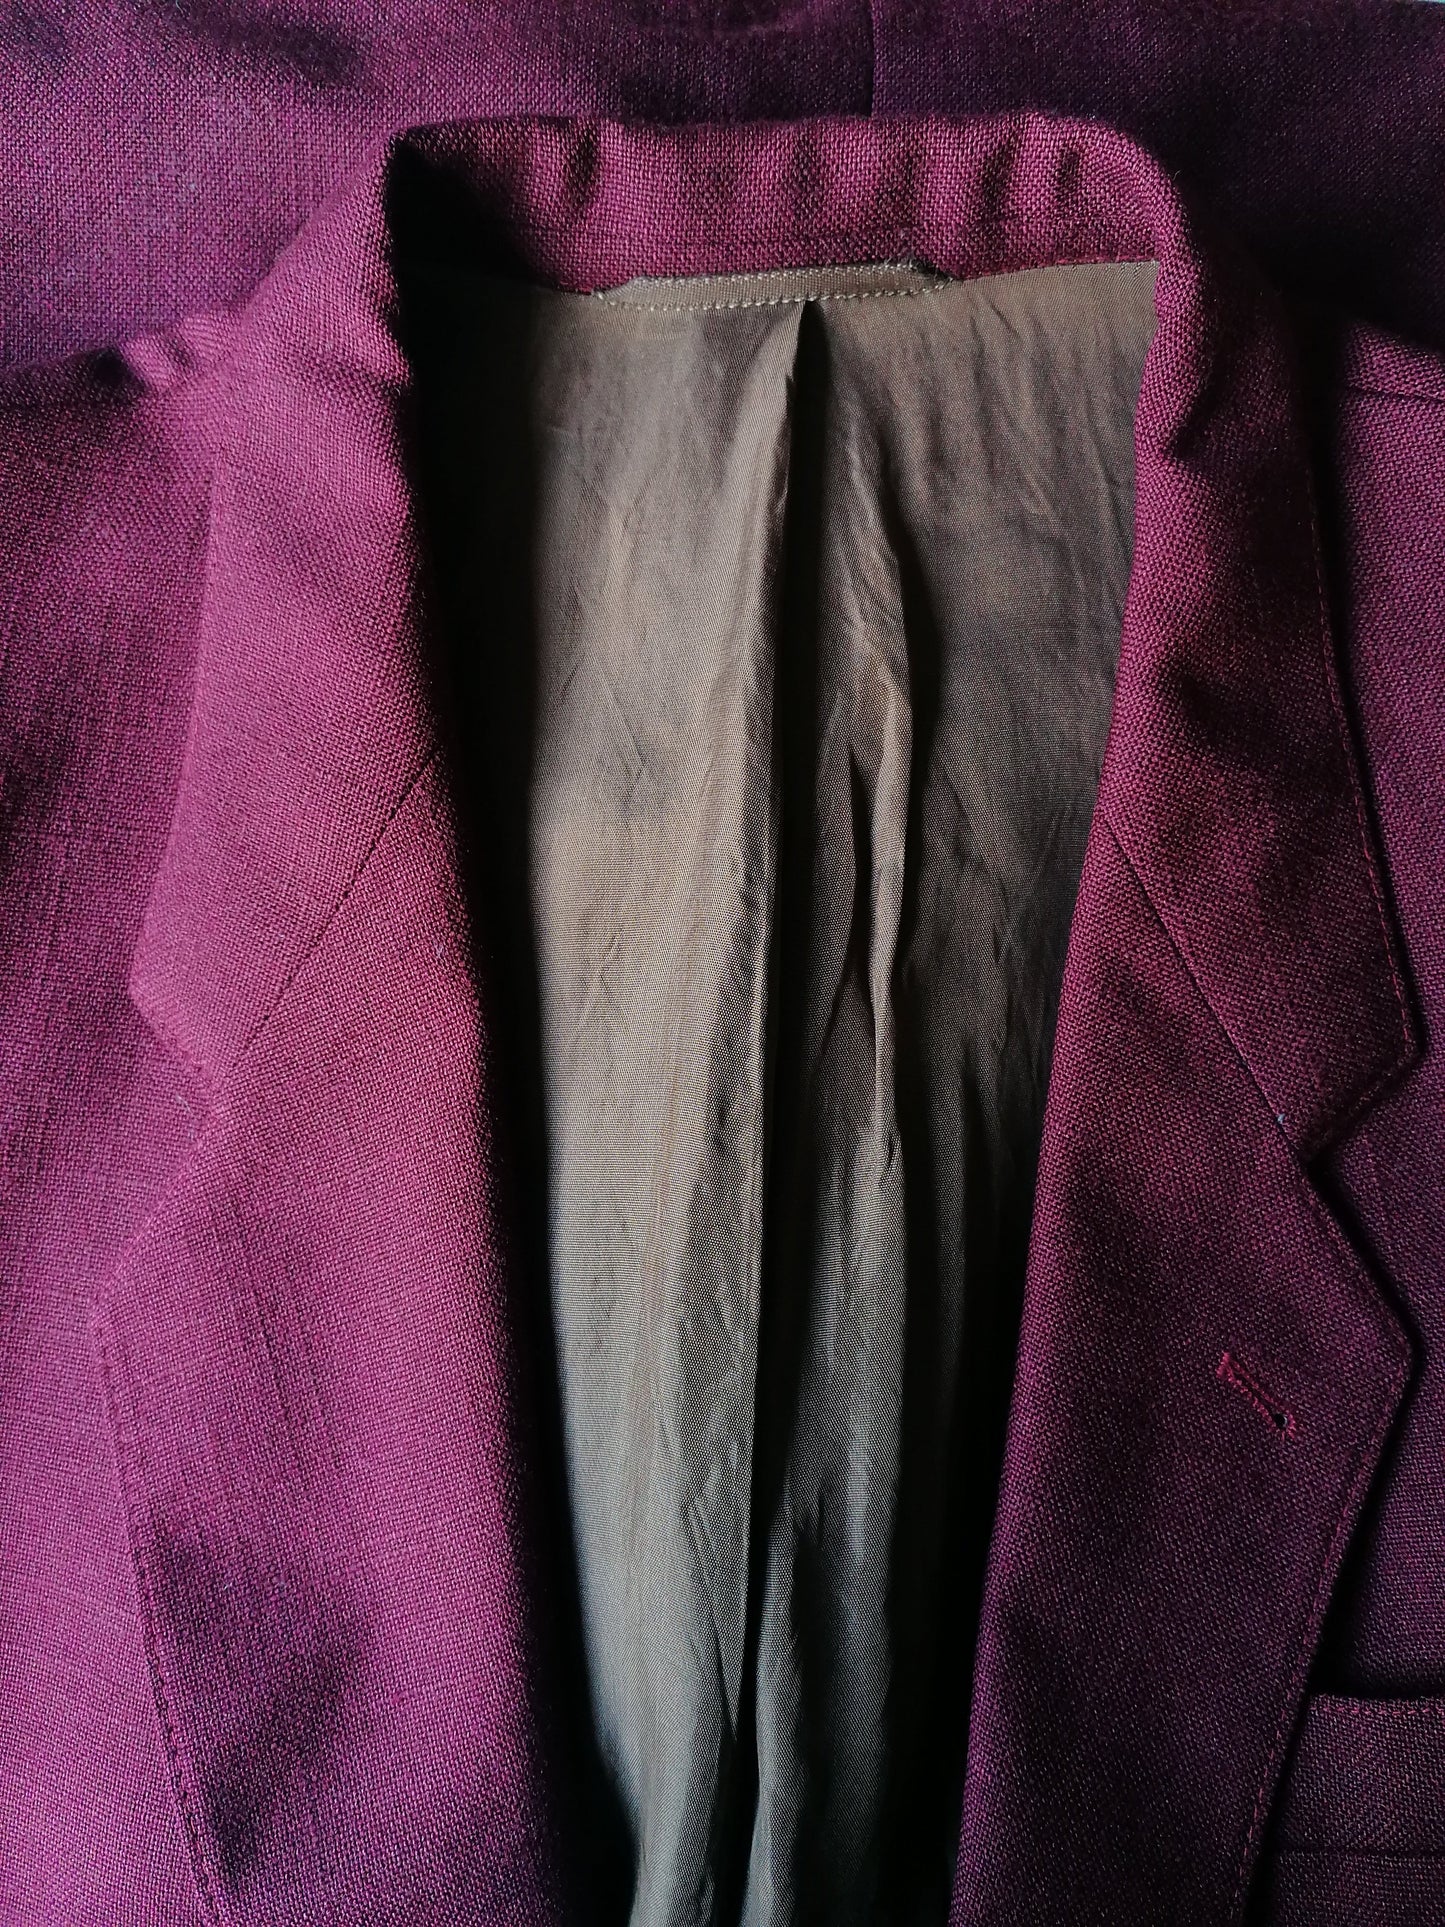 Guiseppe Marlone Jacket. Red oscuro / Burdeos de color. Tamaño 52 / L.